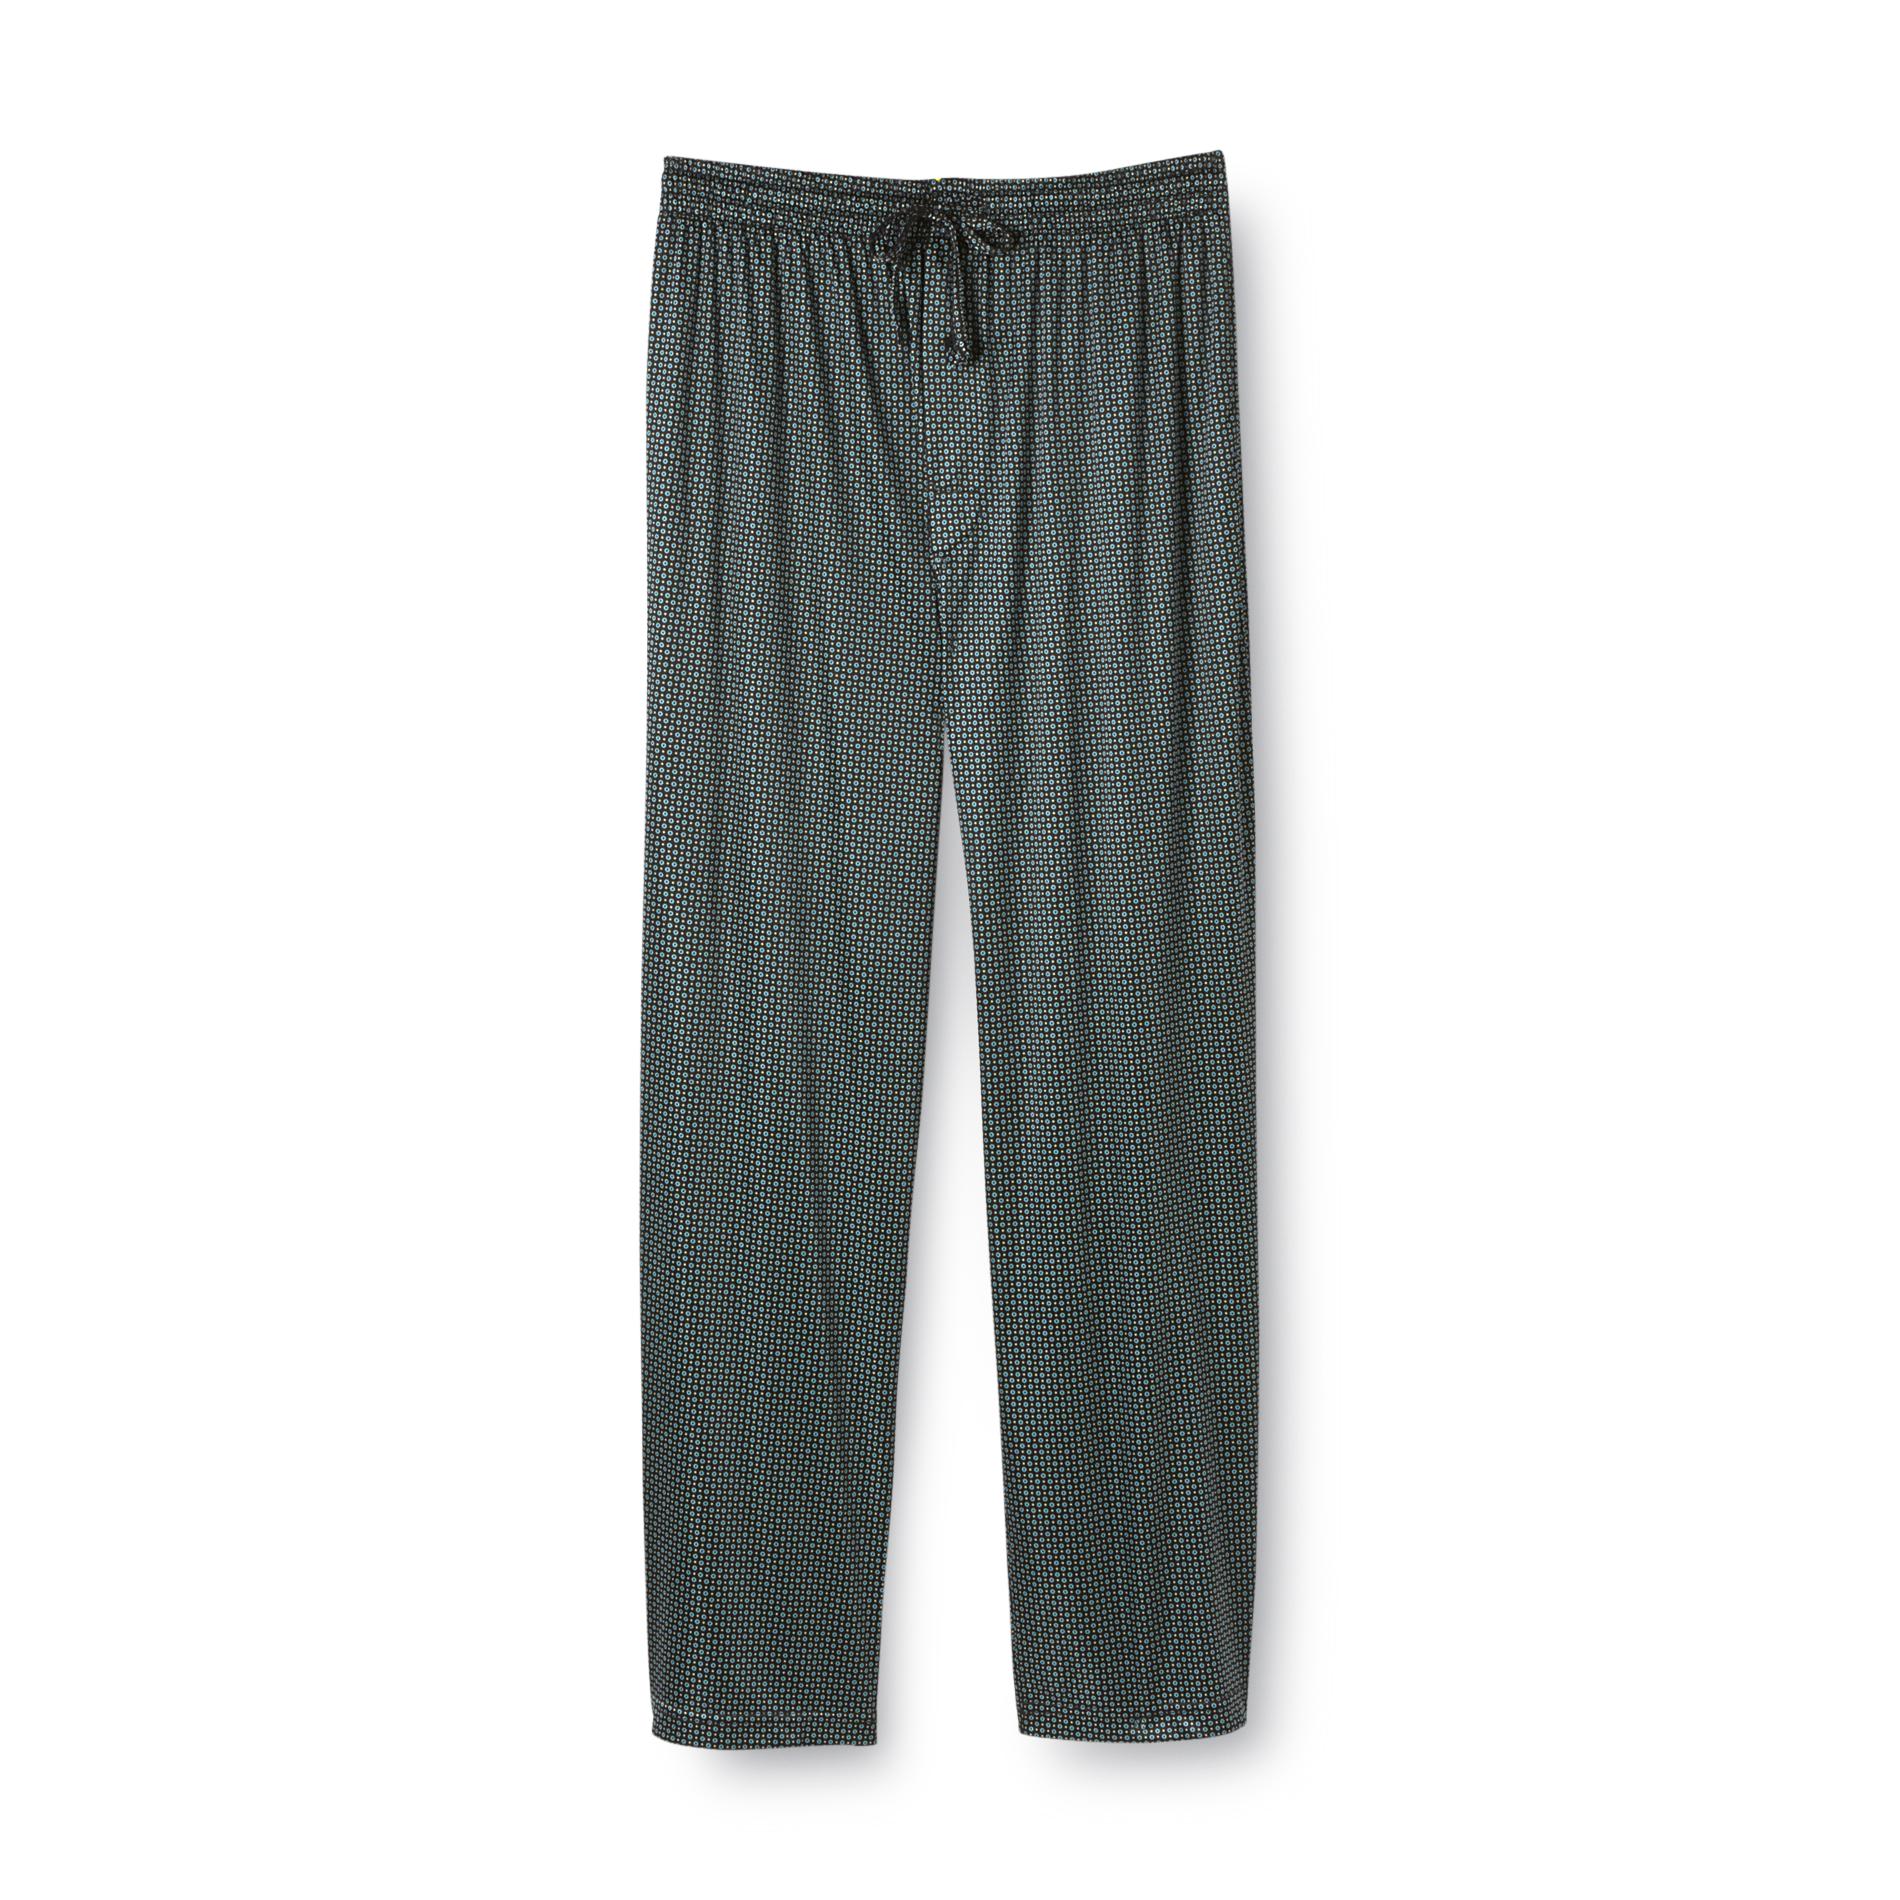 Covington Men's Satin Pajama Pants - Dots